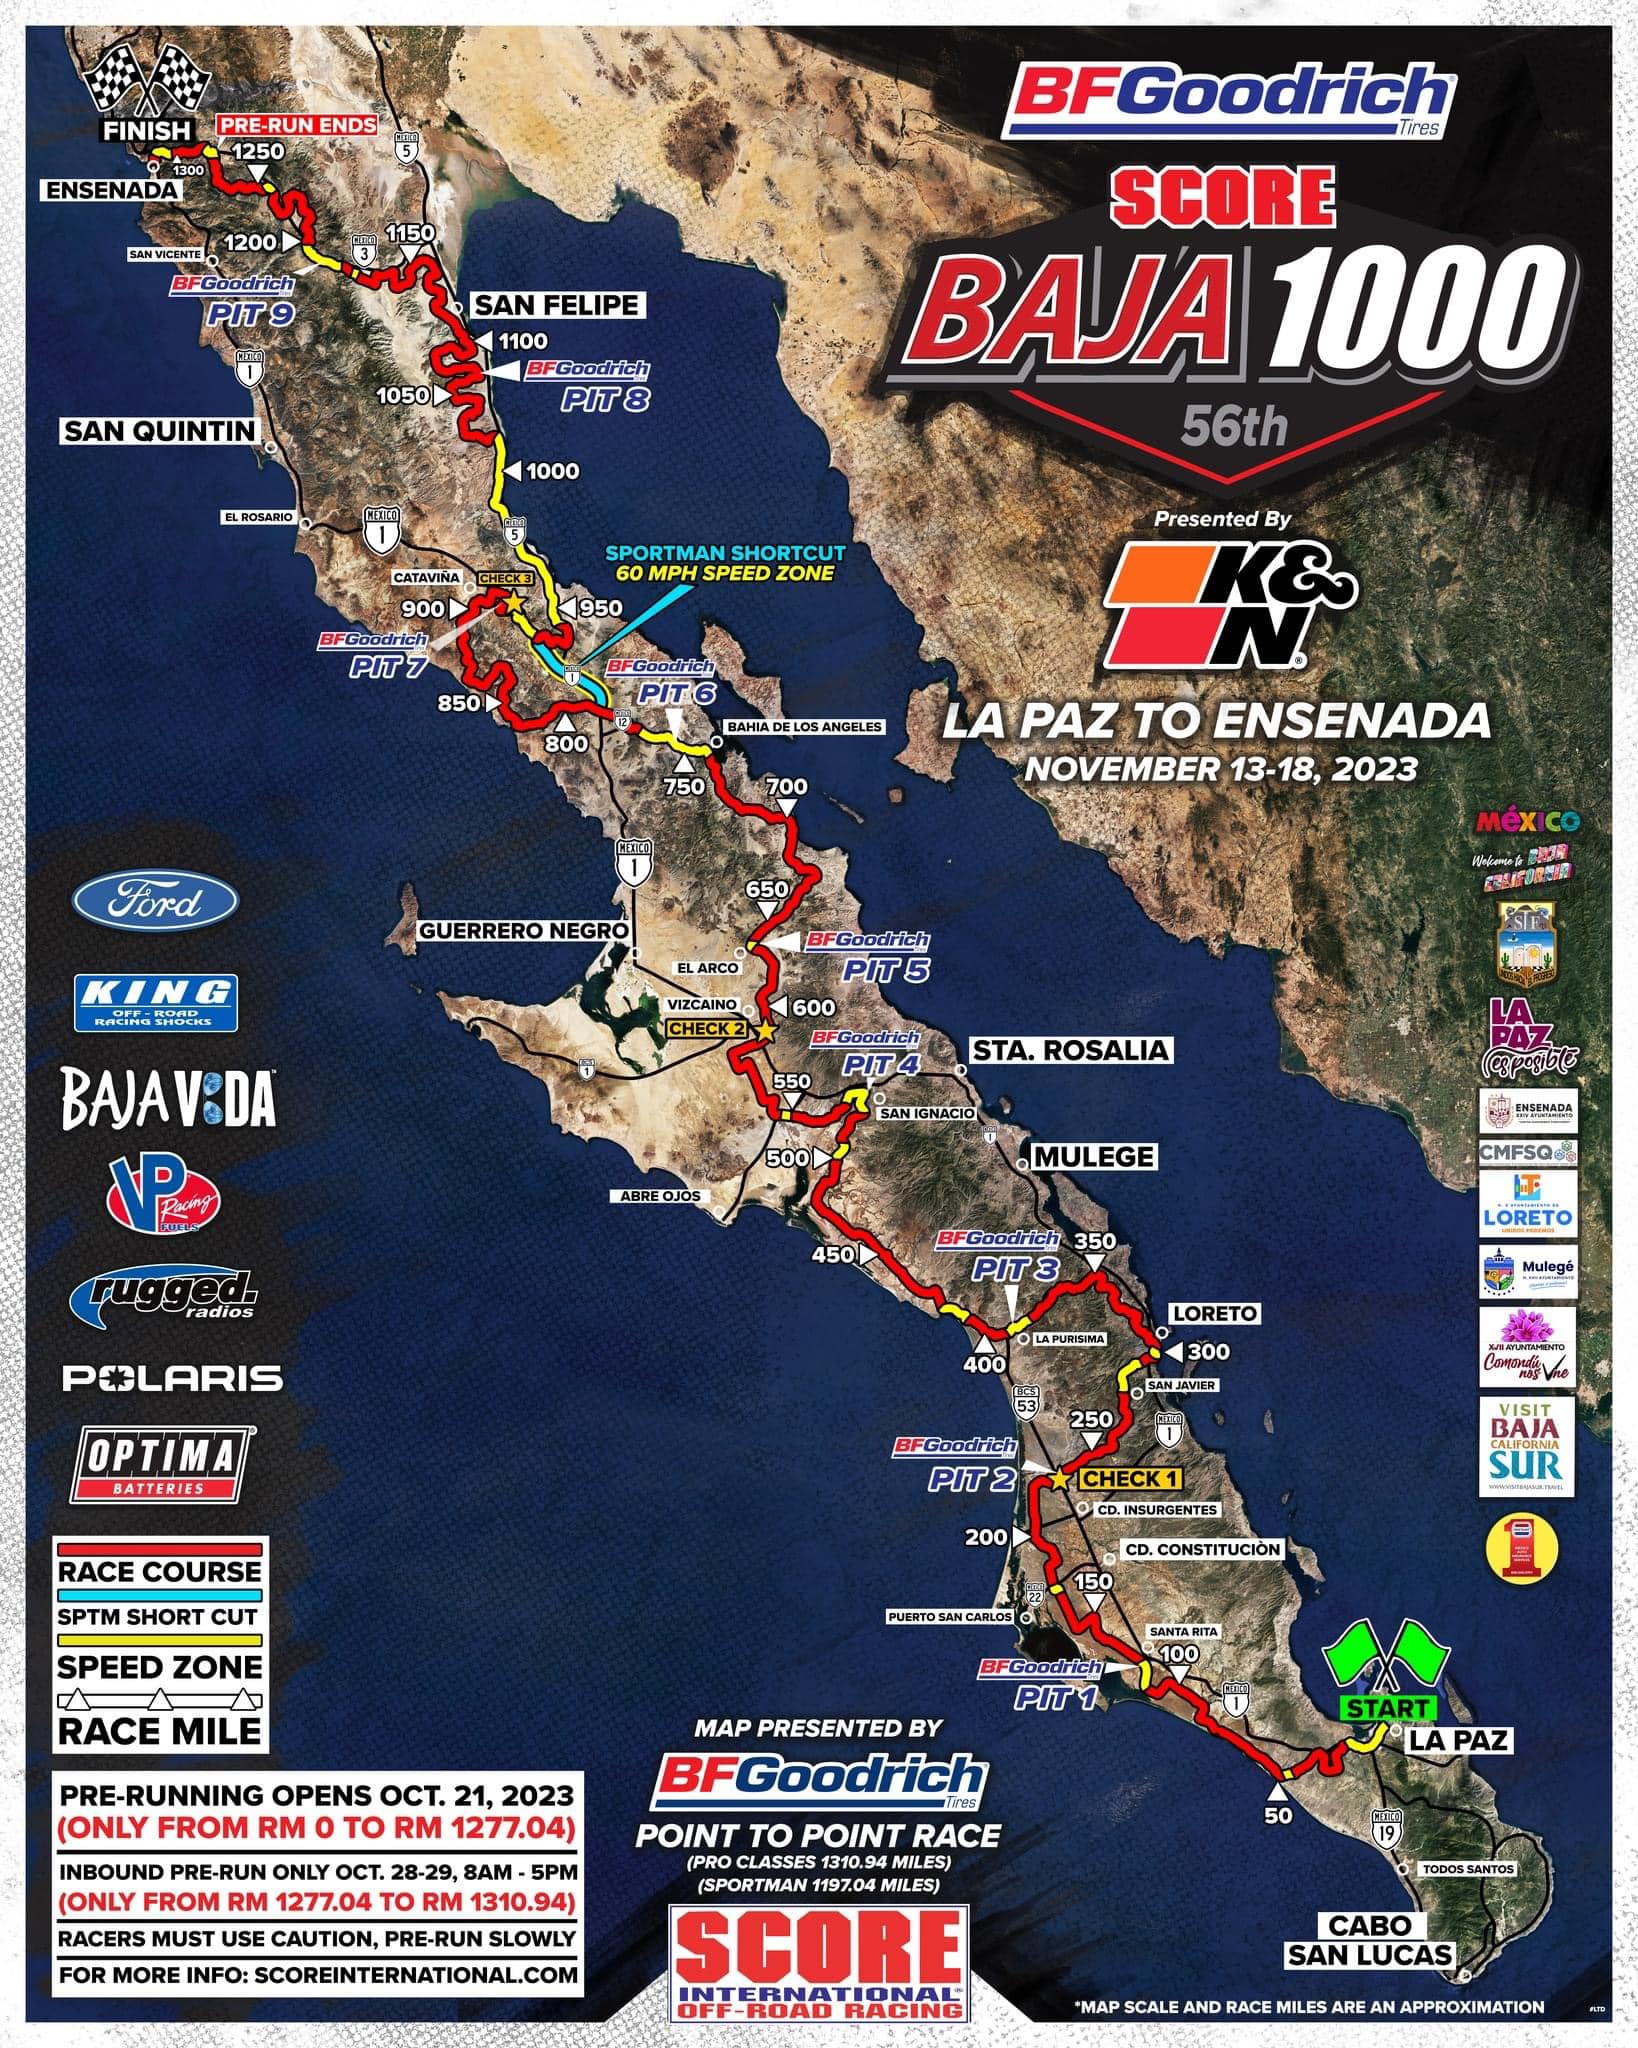 Baja 1000 in Loreto